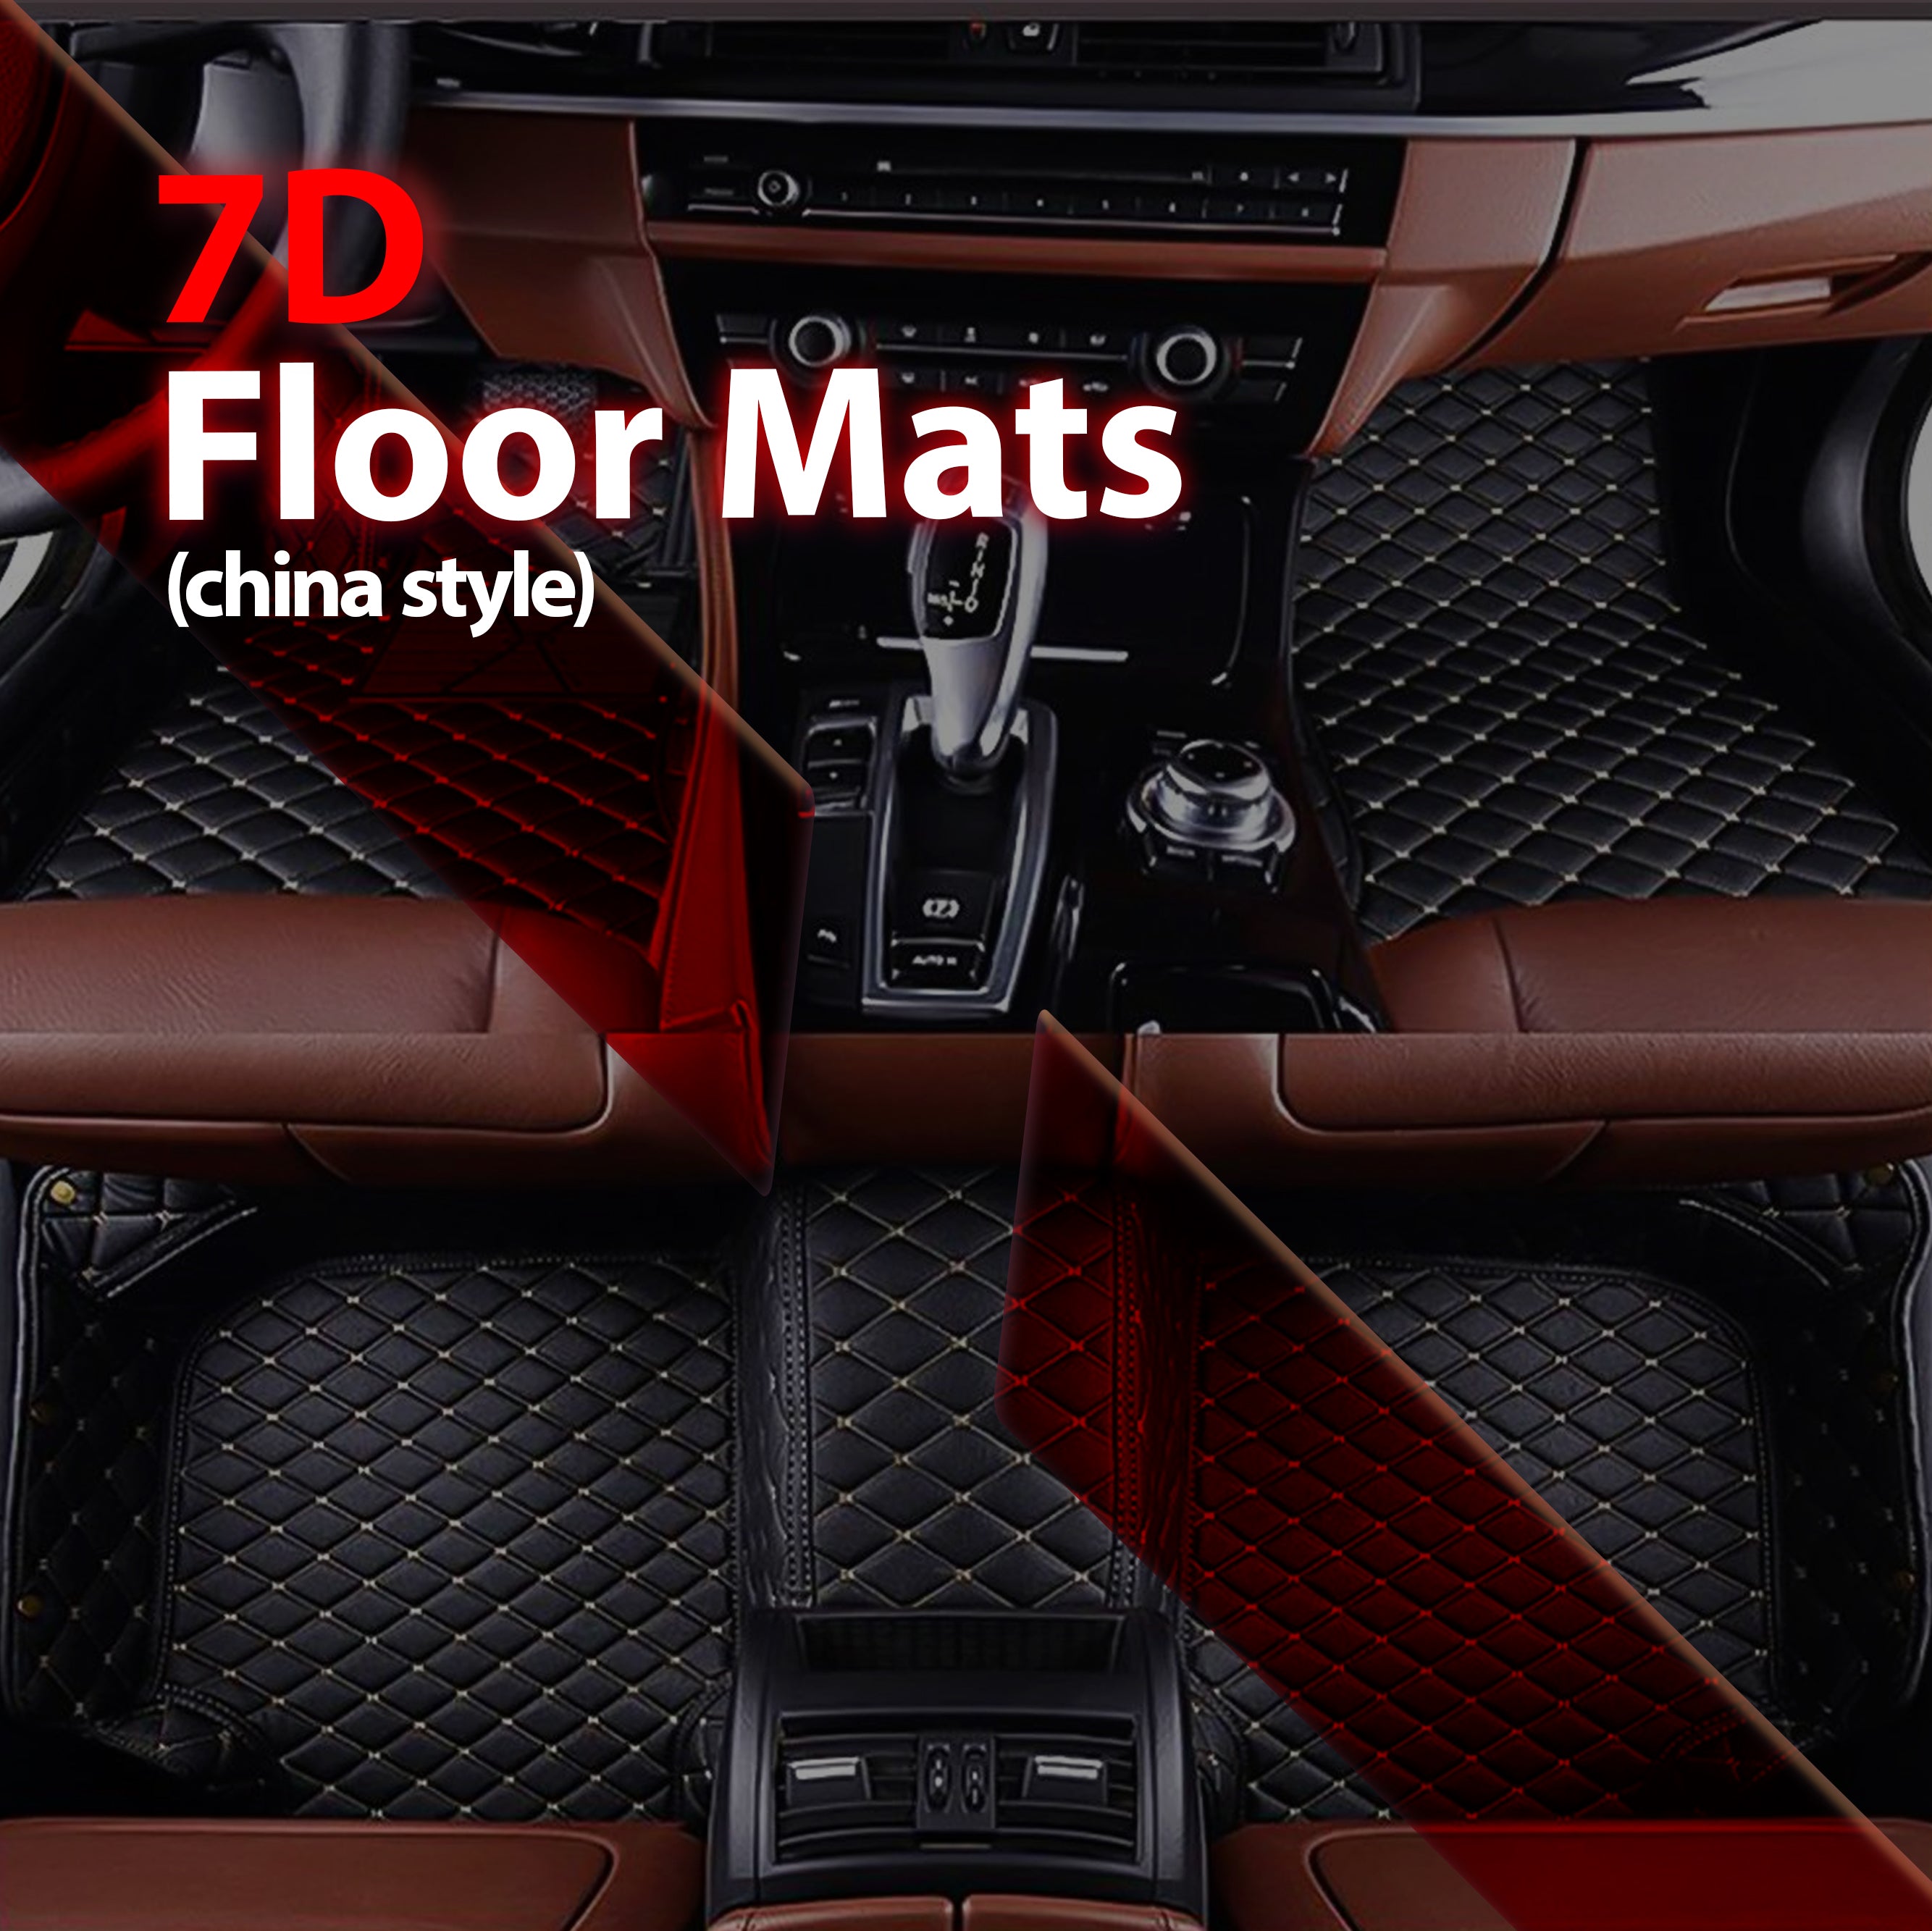 7D Floor Mats